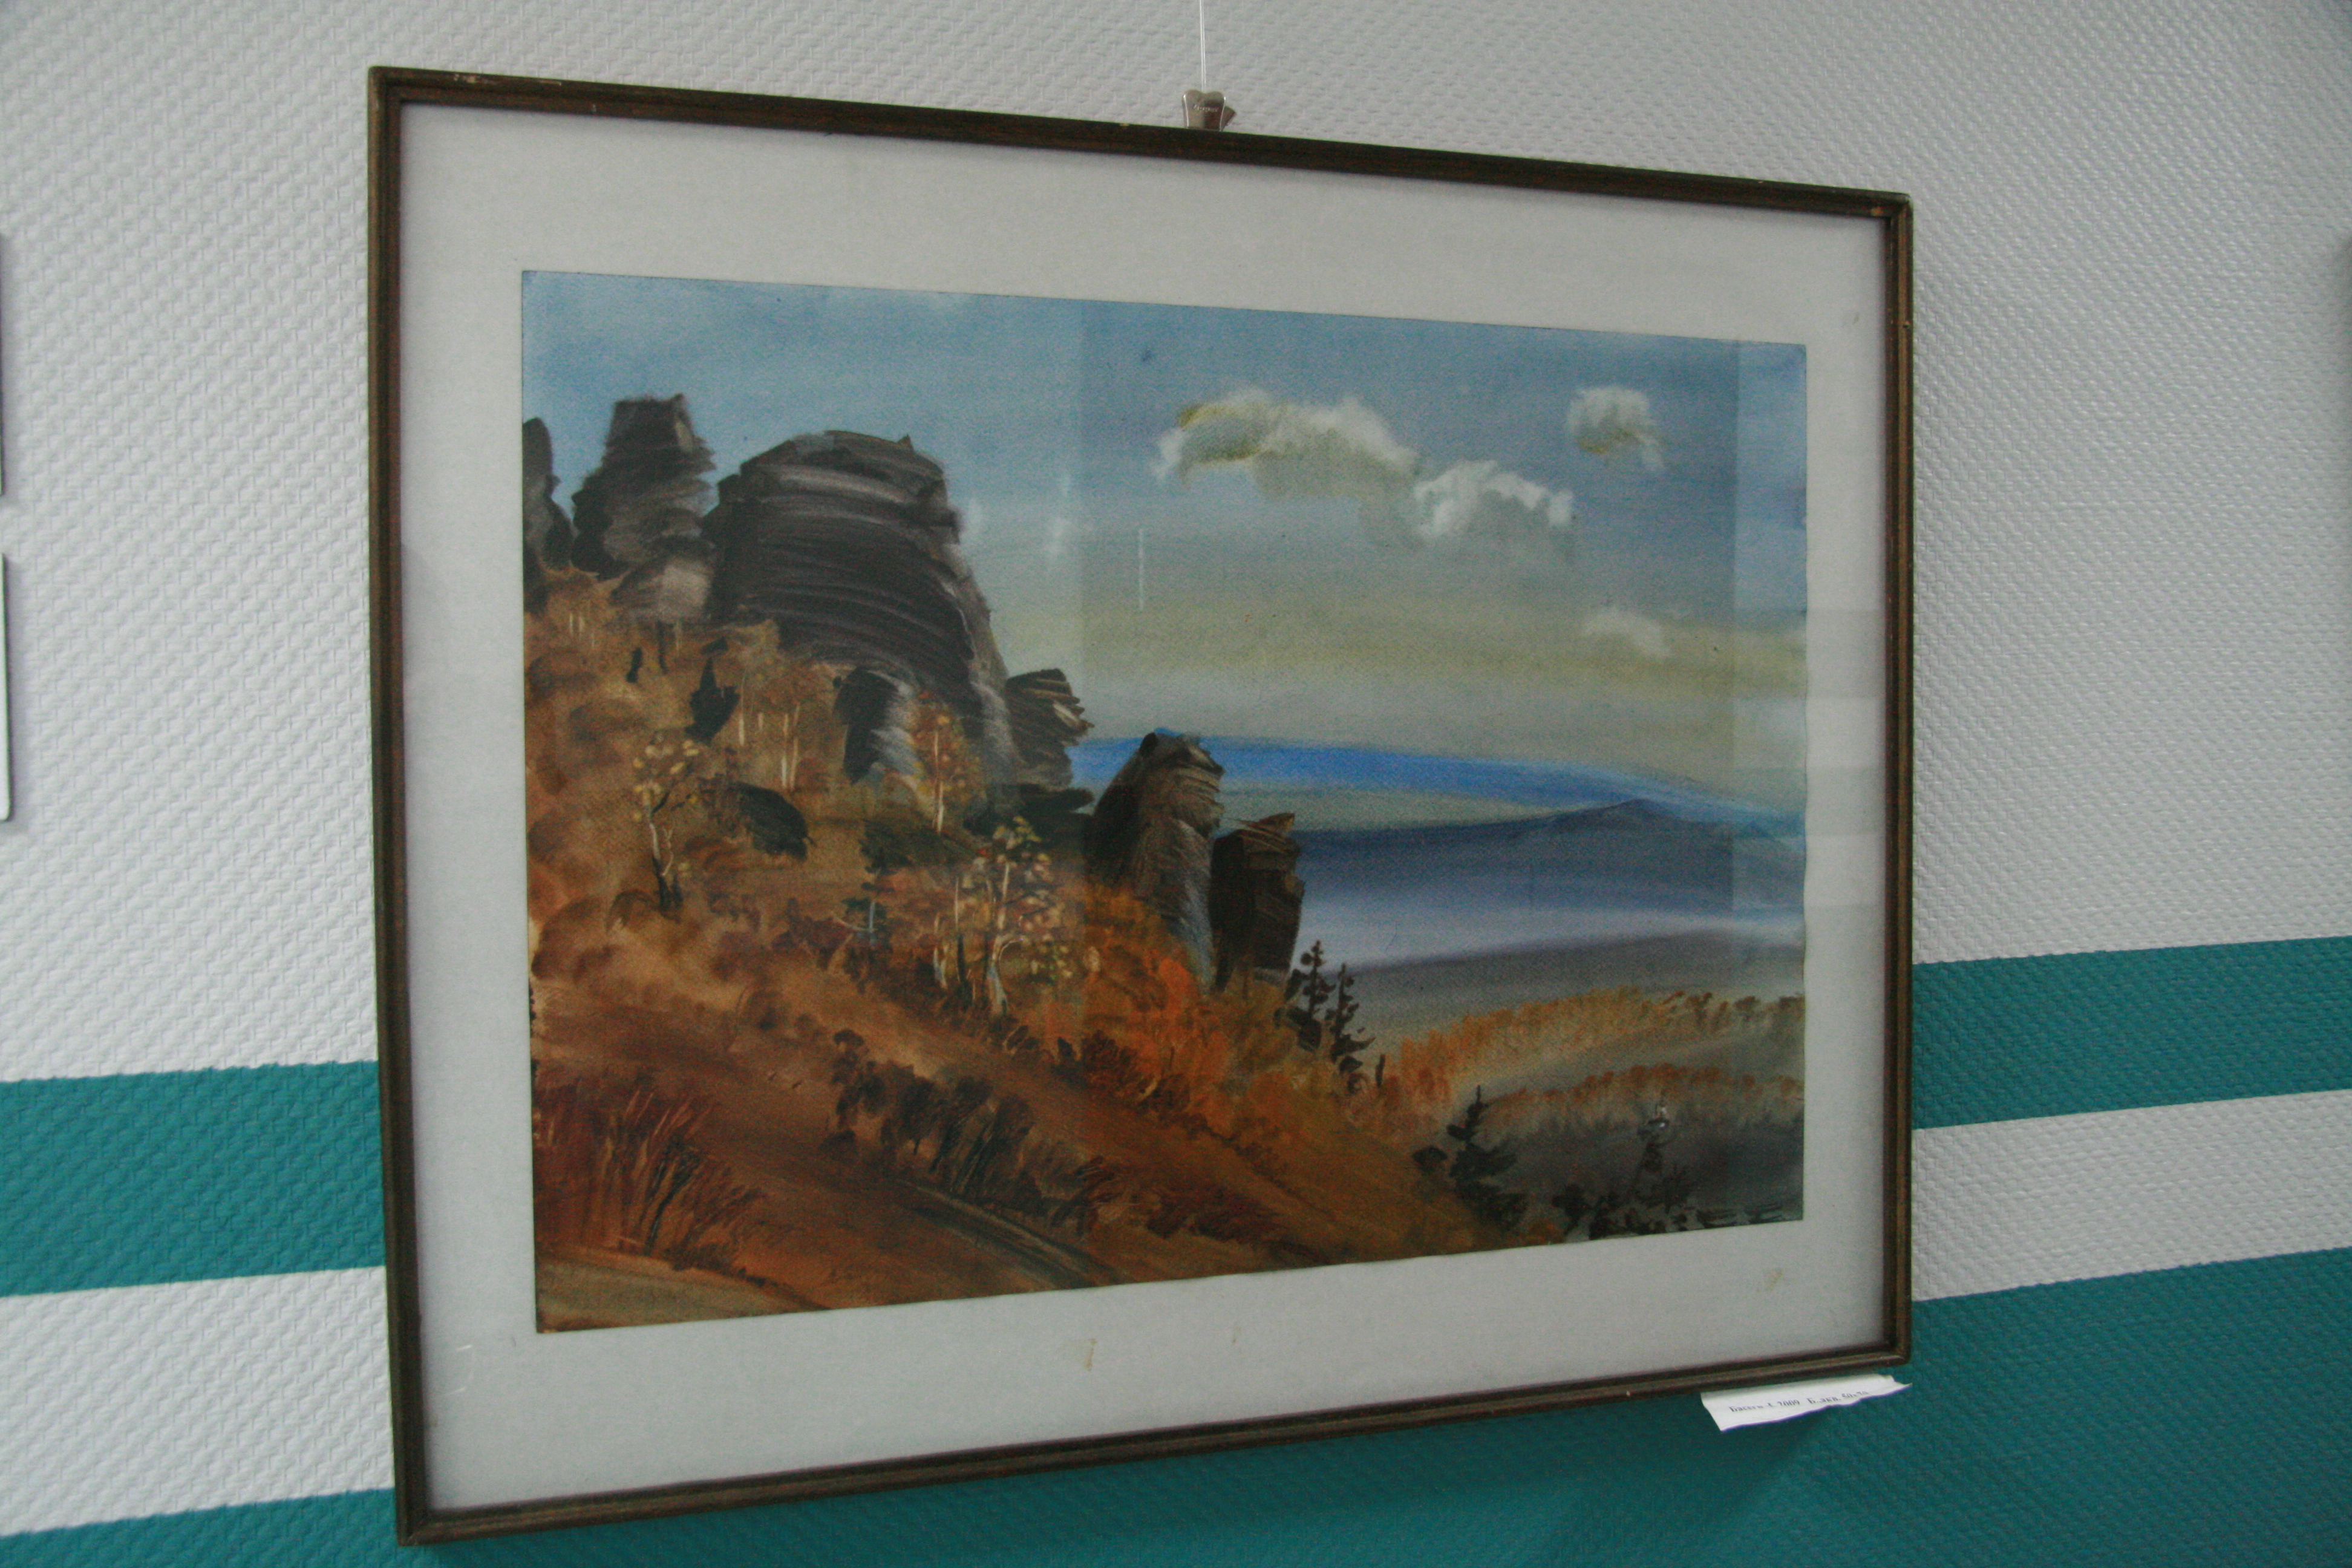 Exhibition of watercolors by Olga Lutsko